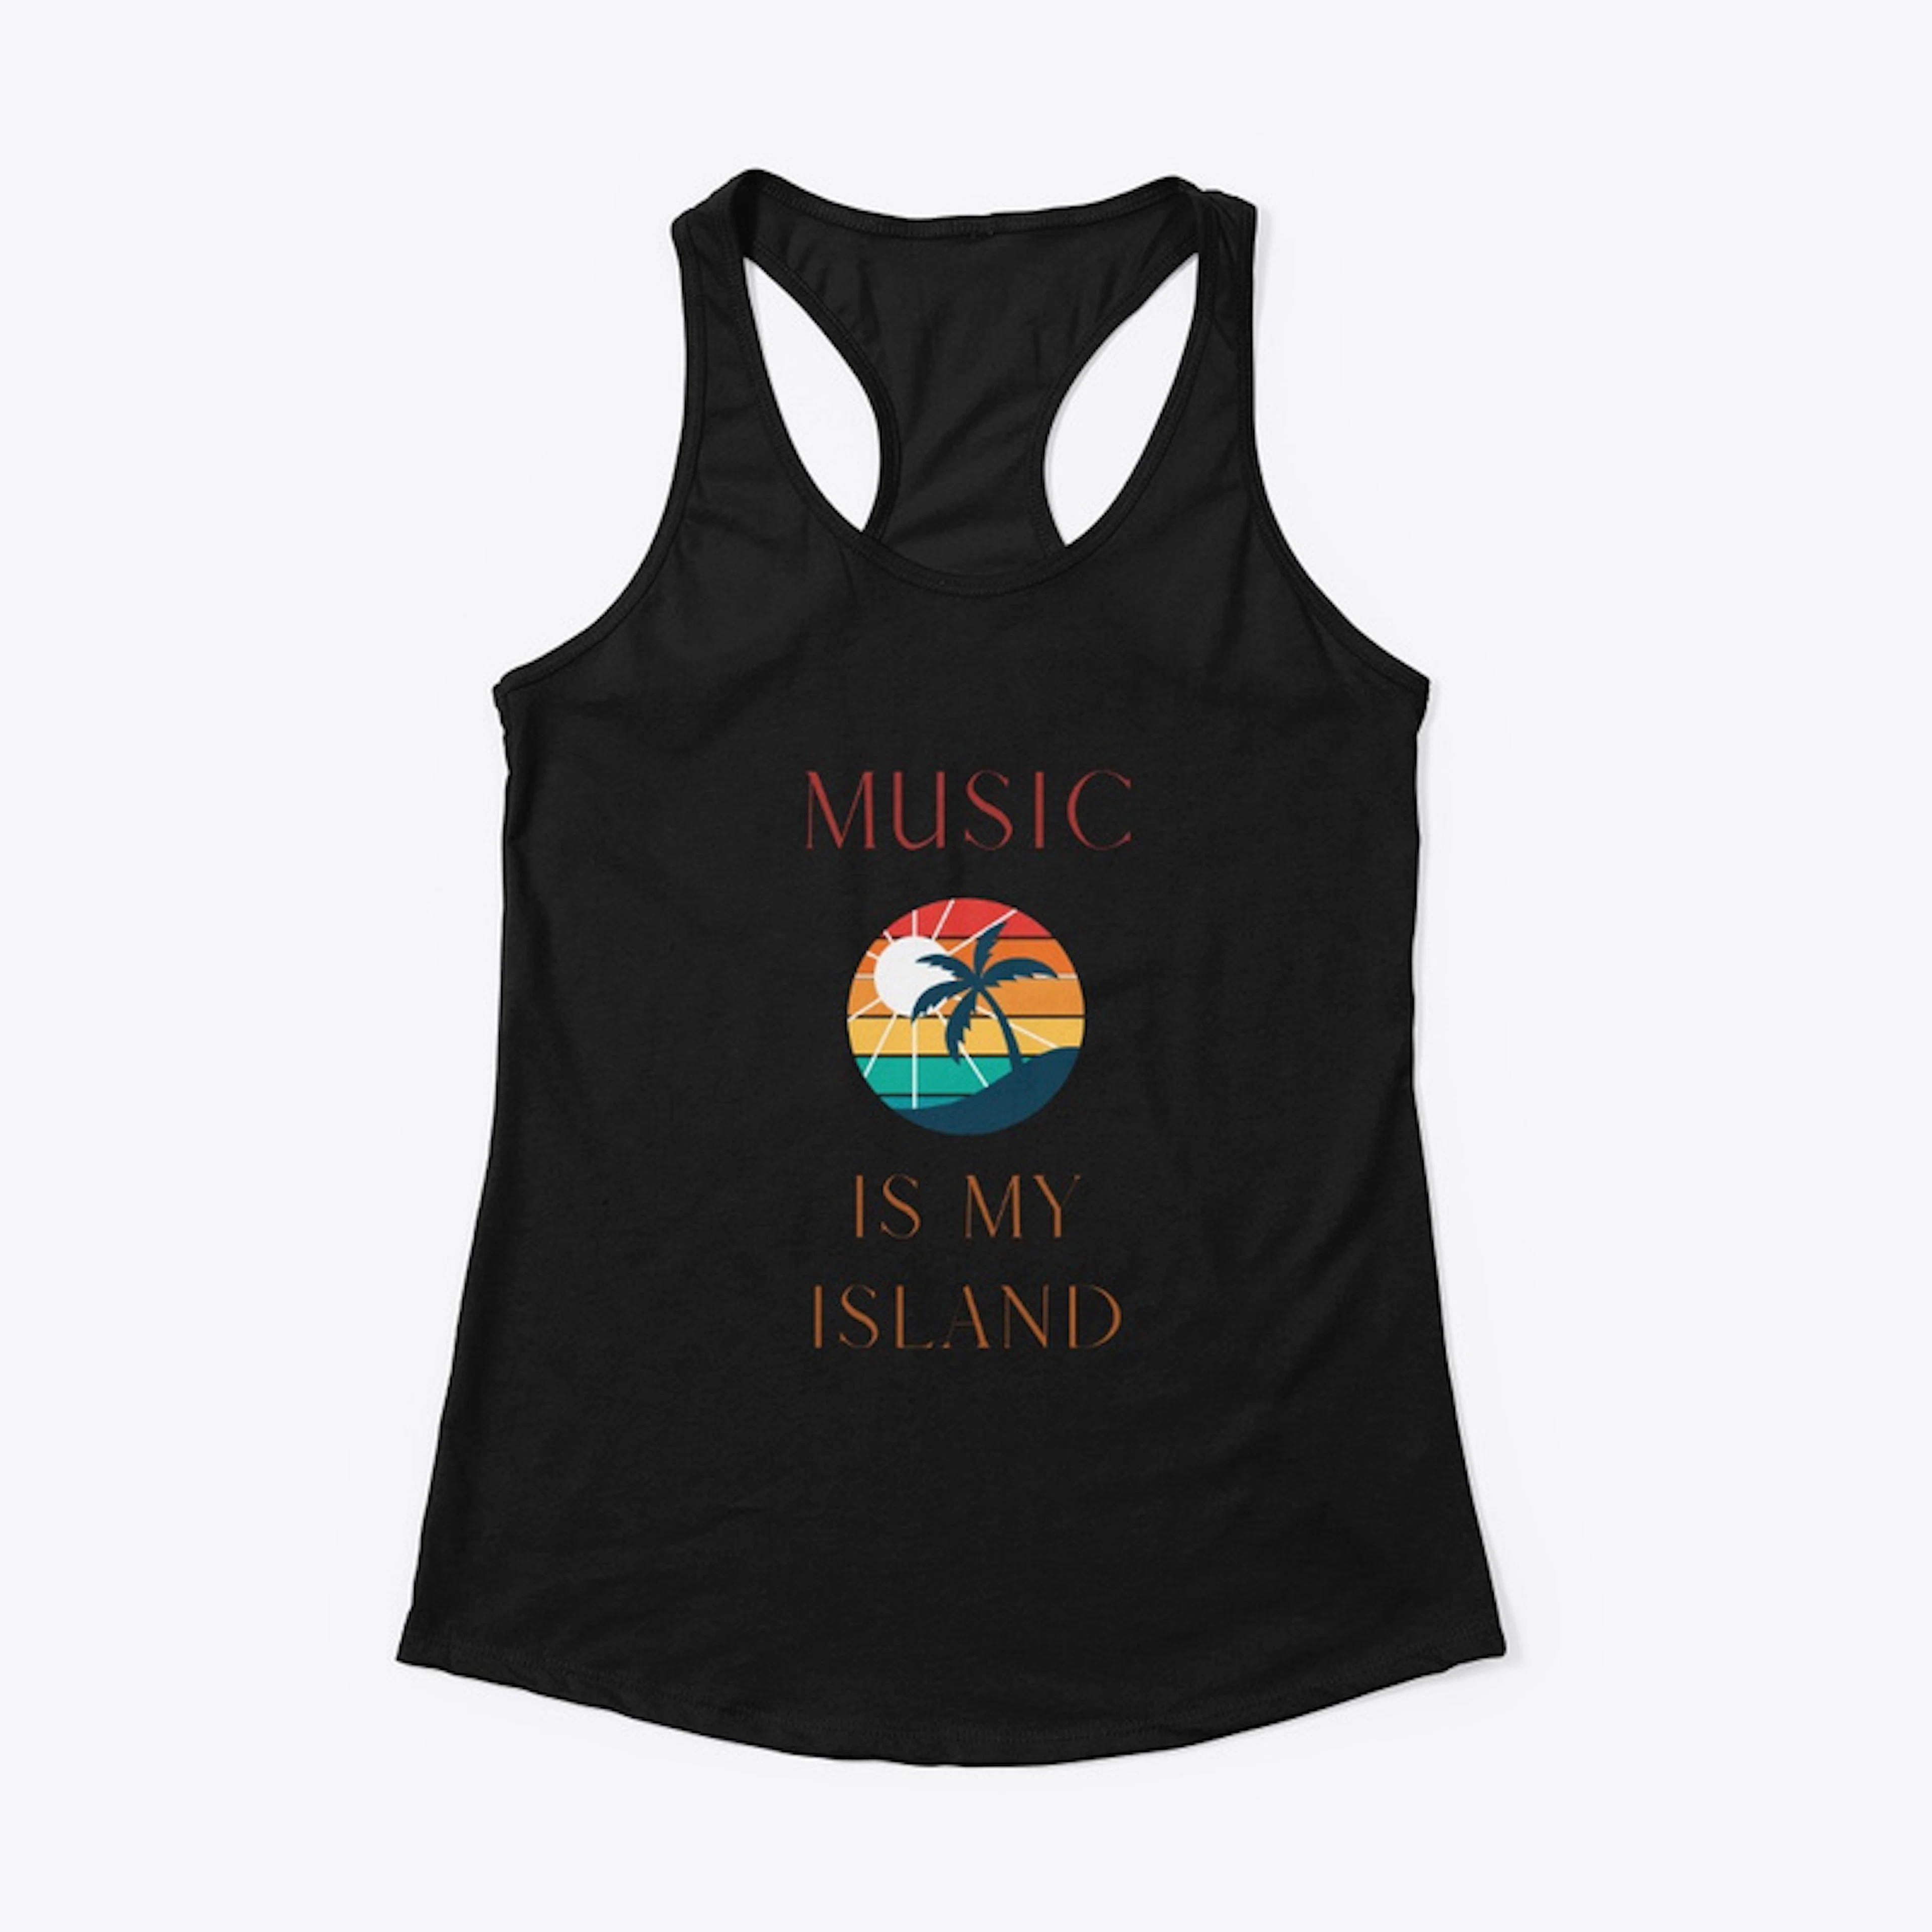 Music is My Island wear